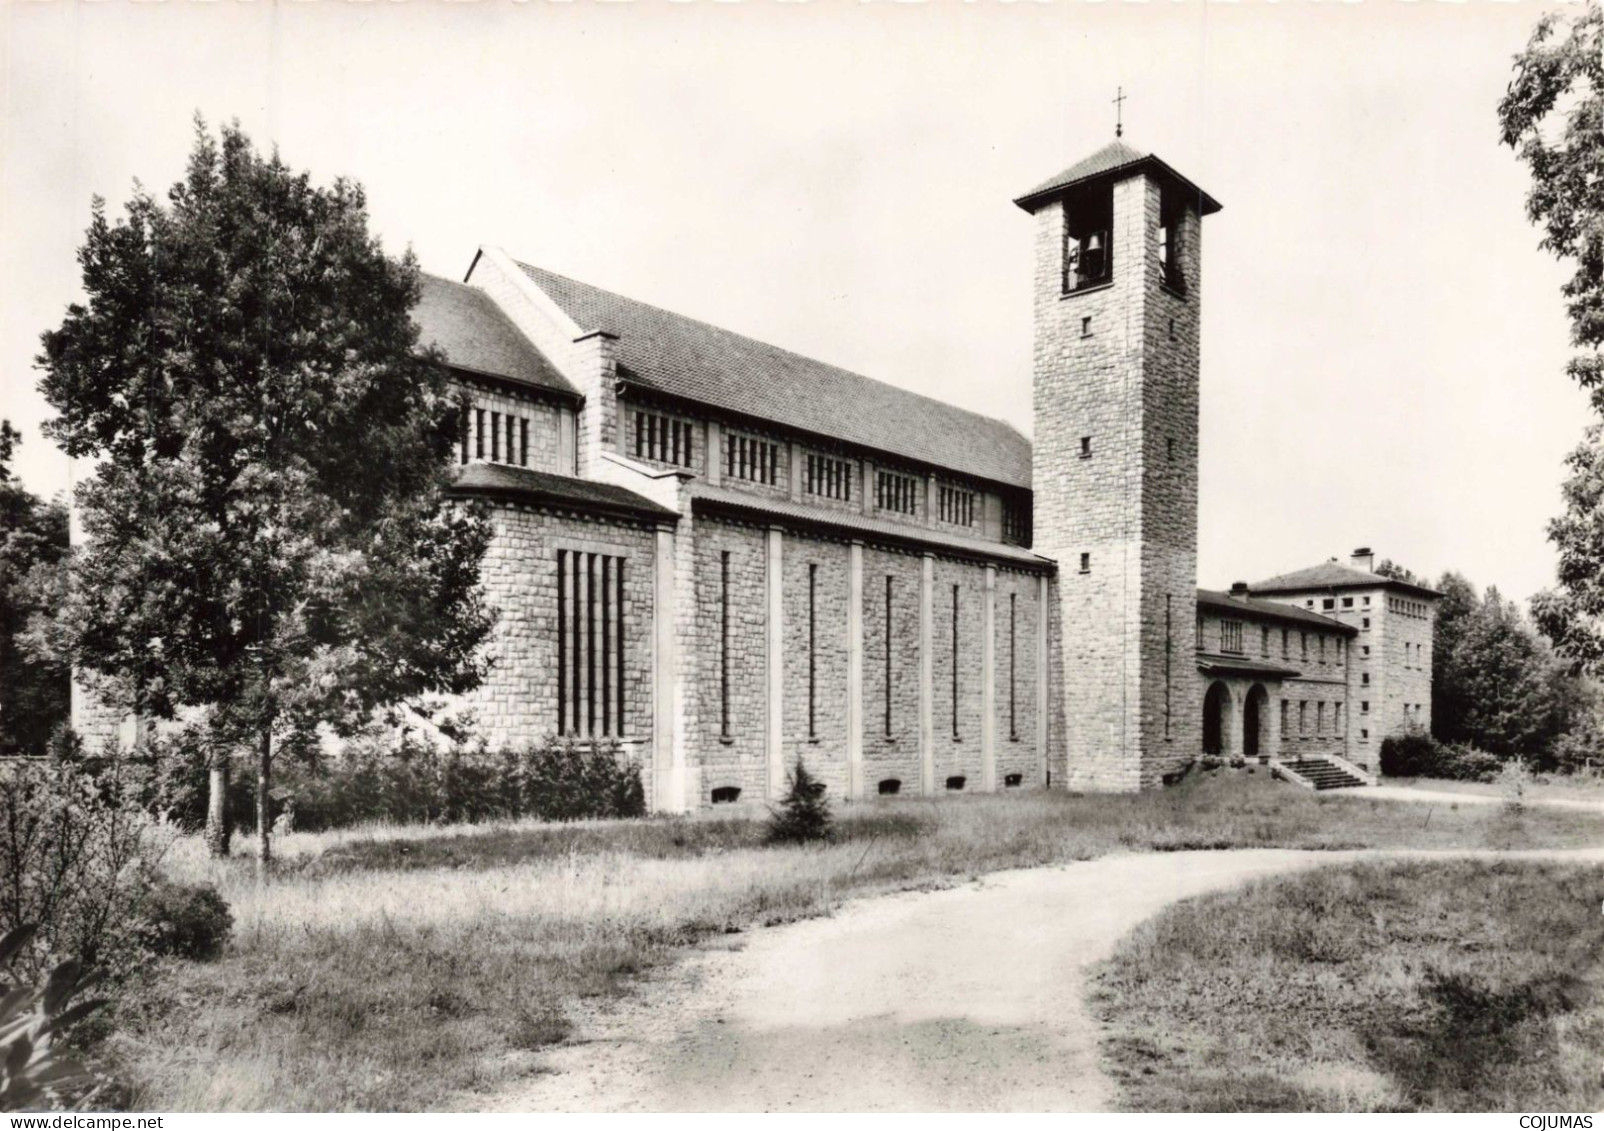 65 - TOURNAY _S27895_ Abbaye Notre Dame - L'Eglise Et L'Hôtellerie - LESCUYER - CPSM 15x10 Cm - Tournay